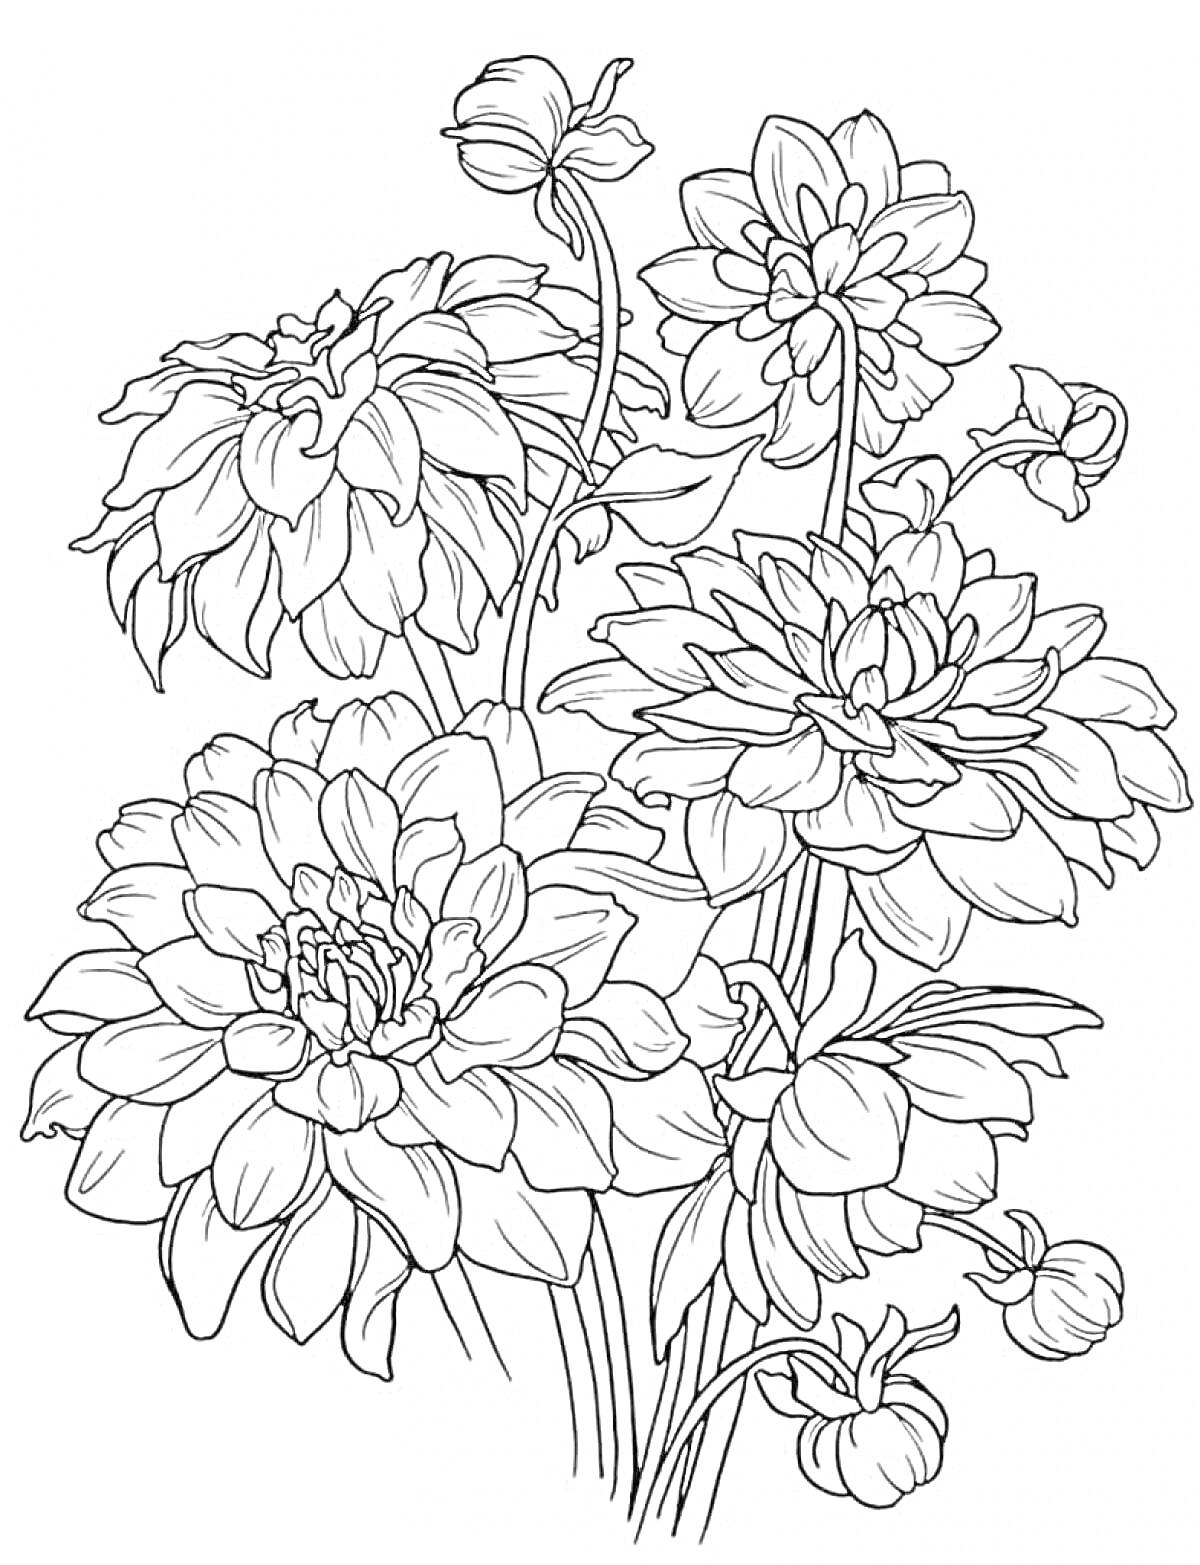 Раскраска Крупные цветы с бутонами и стеблями для раскраски